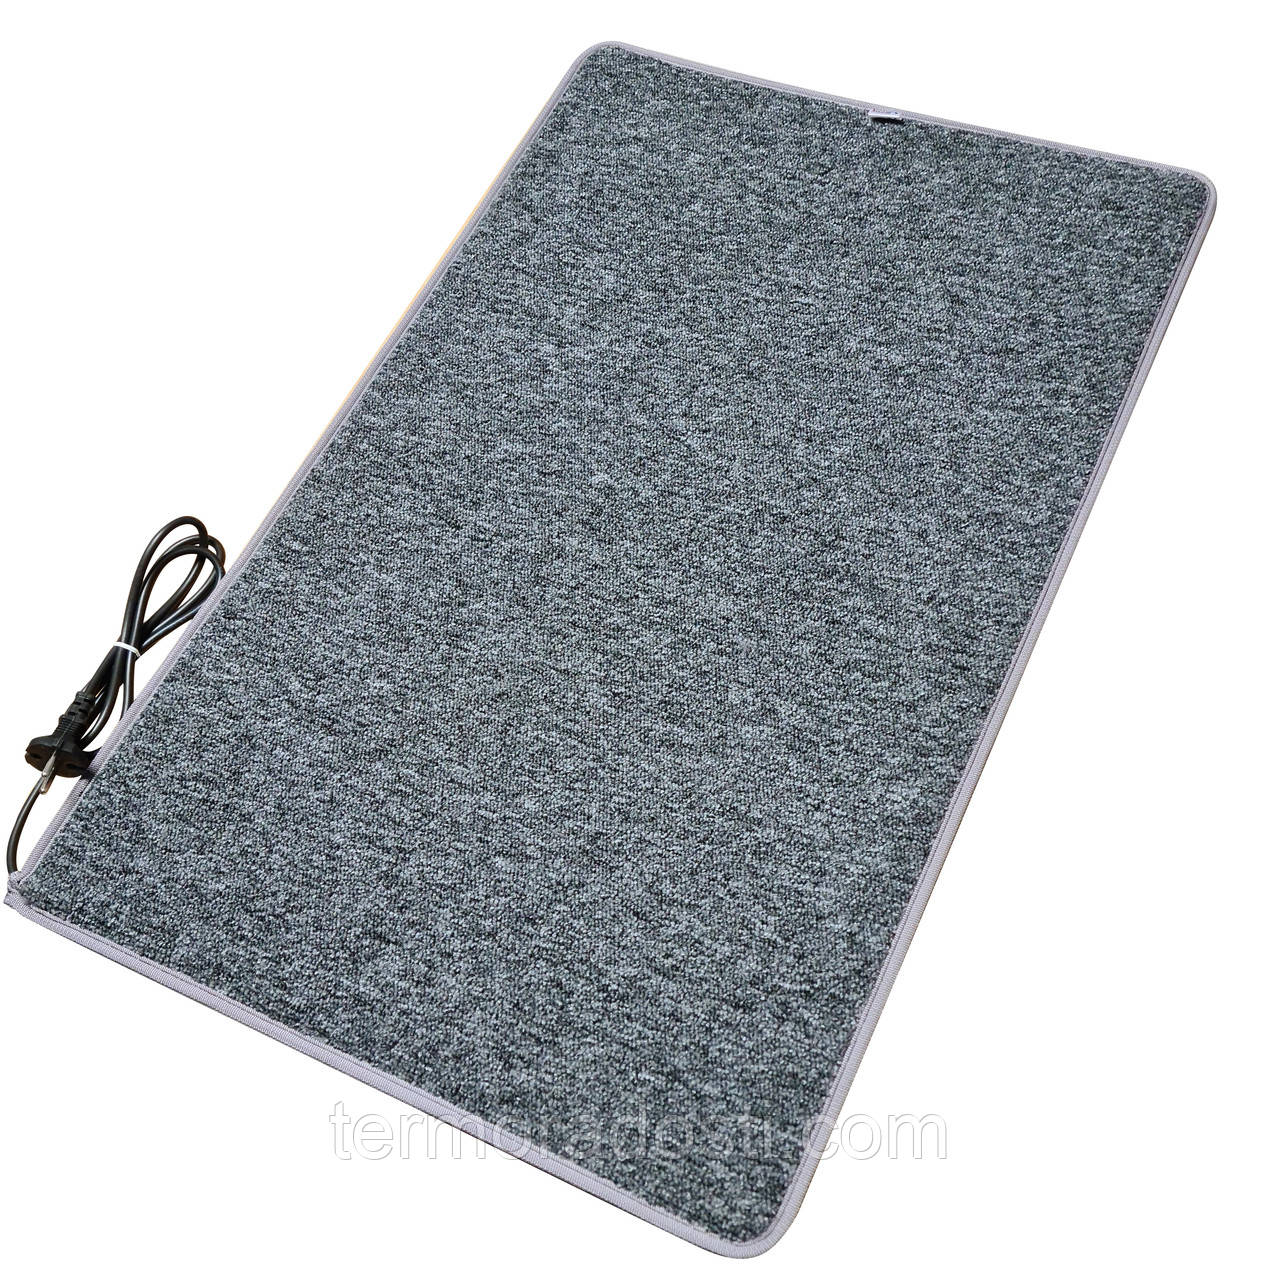 Електричний килимок з підігрівом LIFEX WC 50x200 Сірий | Електрокилим для ніг Warm Carpet